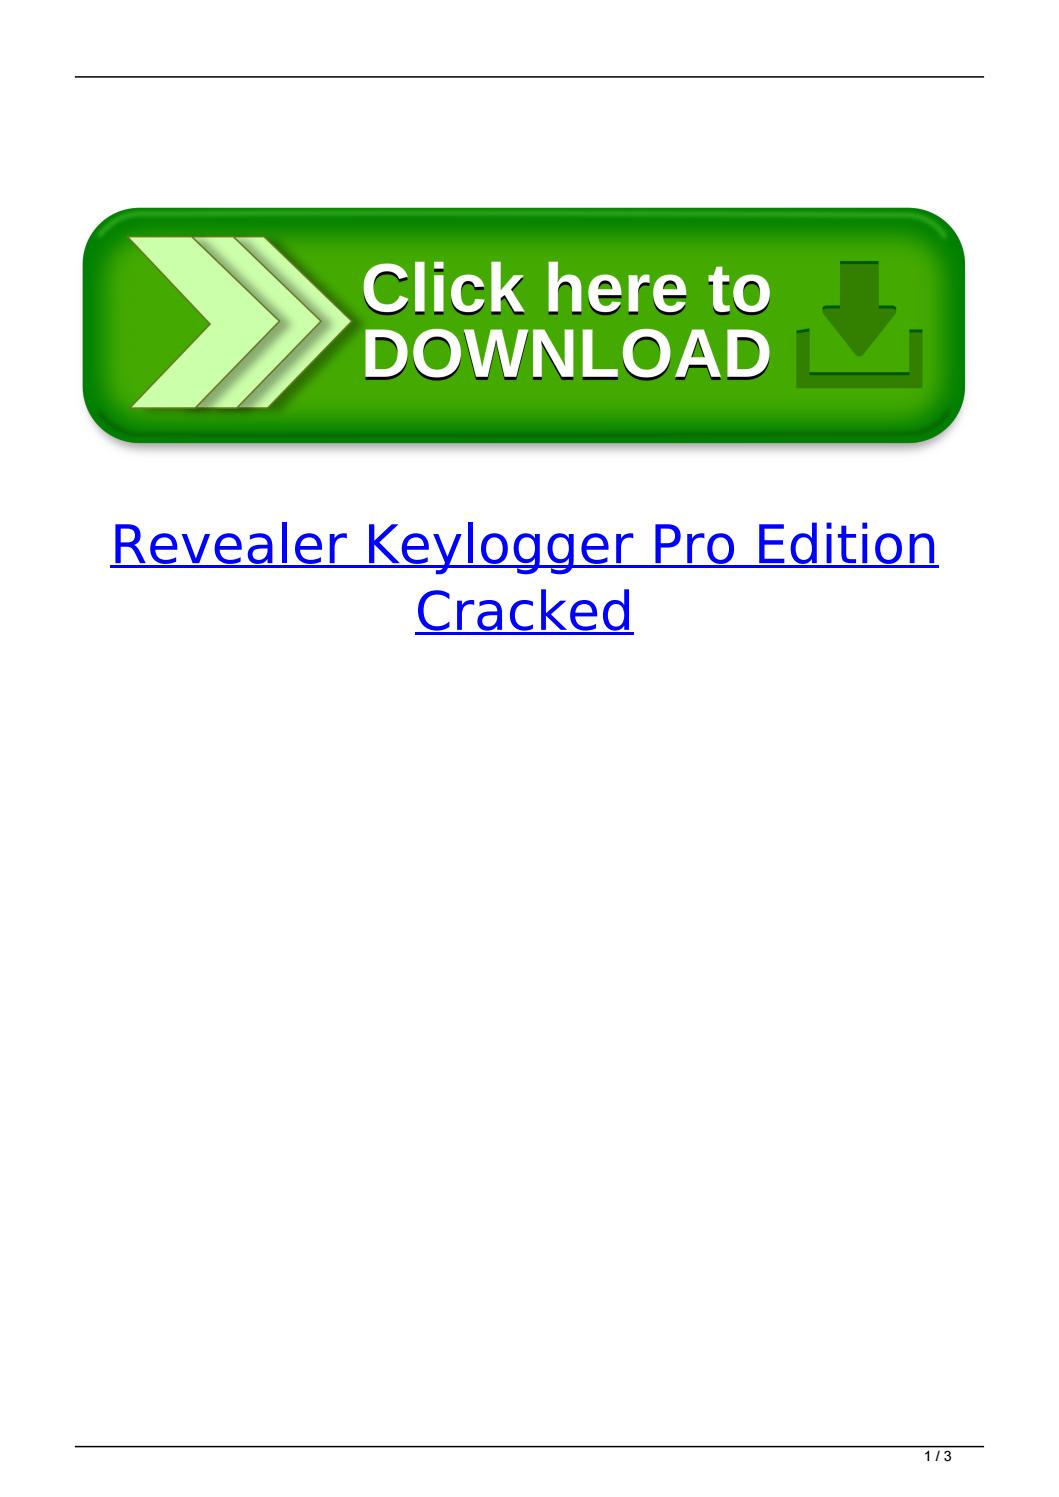 Revealer keylogger download